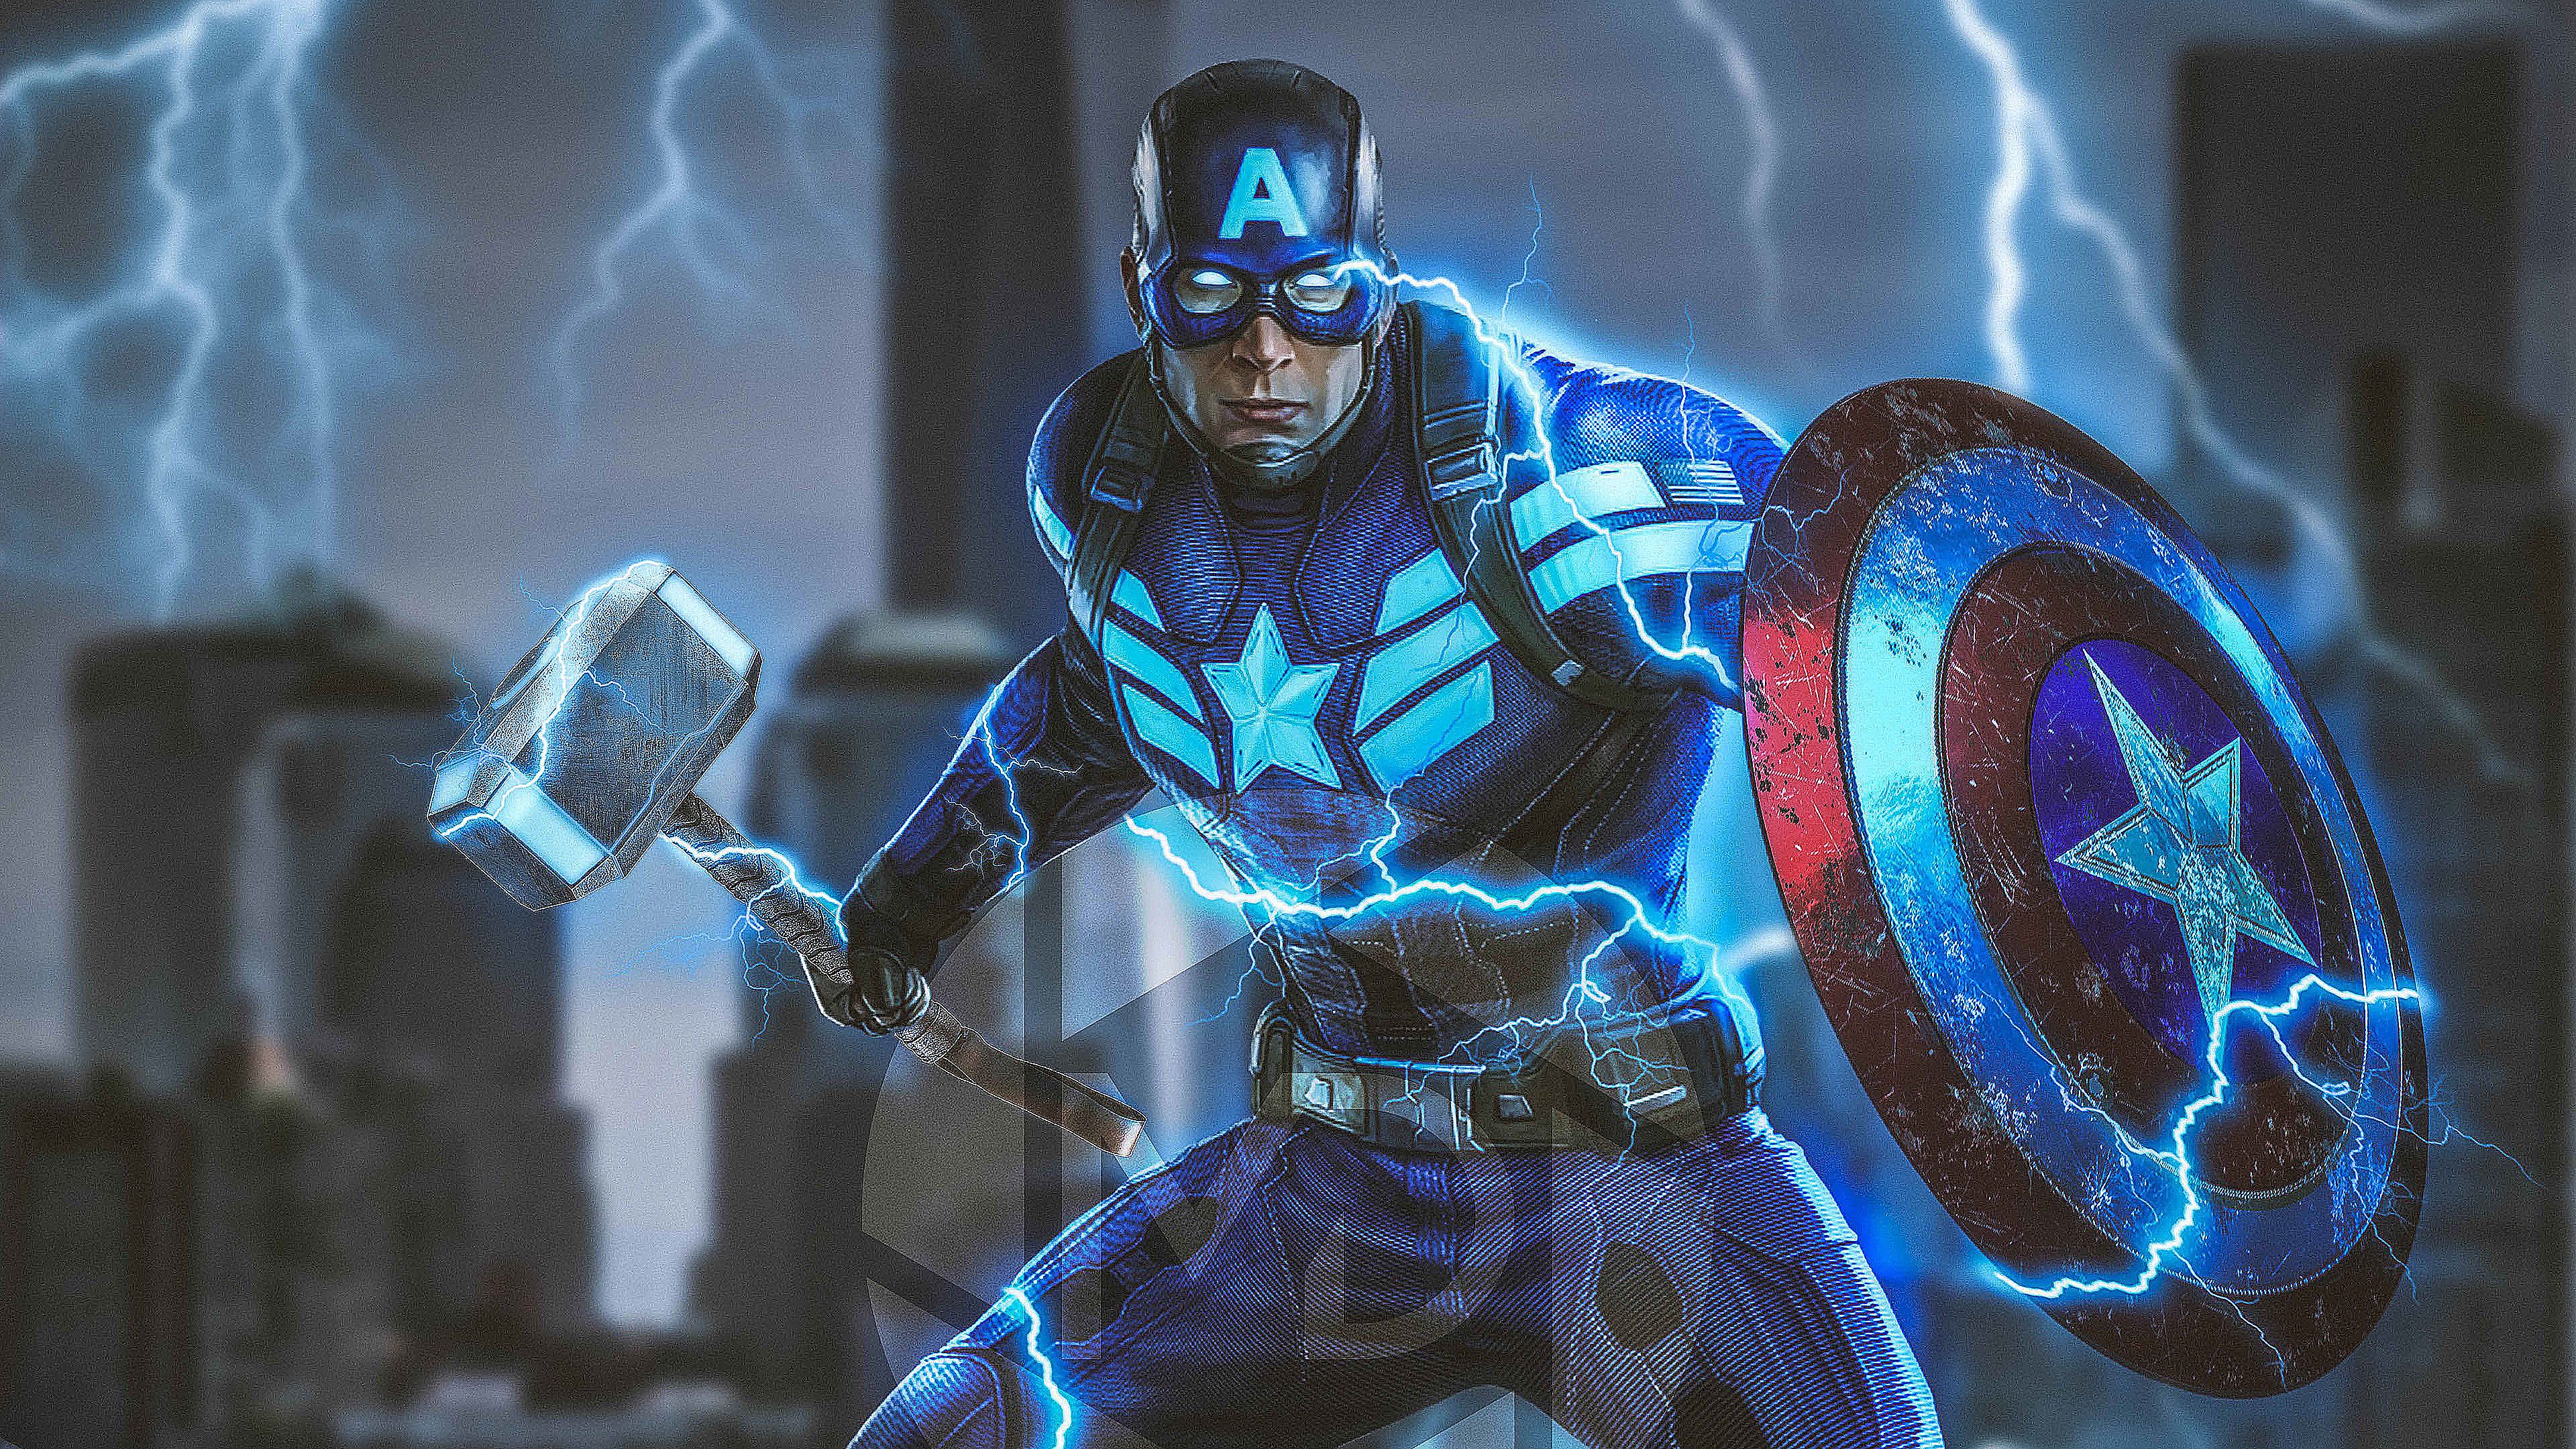 Captain America Mjolnir Avengers Endgame 4k 2019, HD Superheroes, 4k Wallpa...